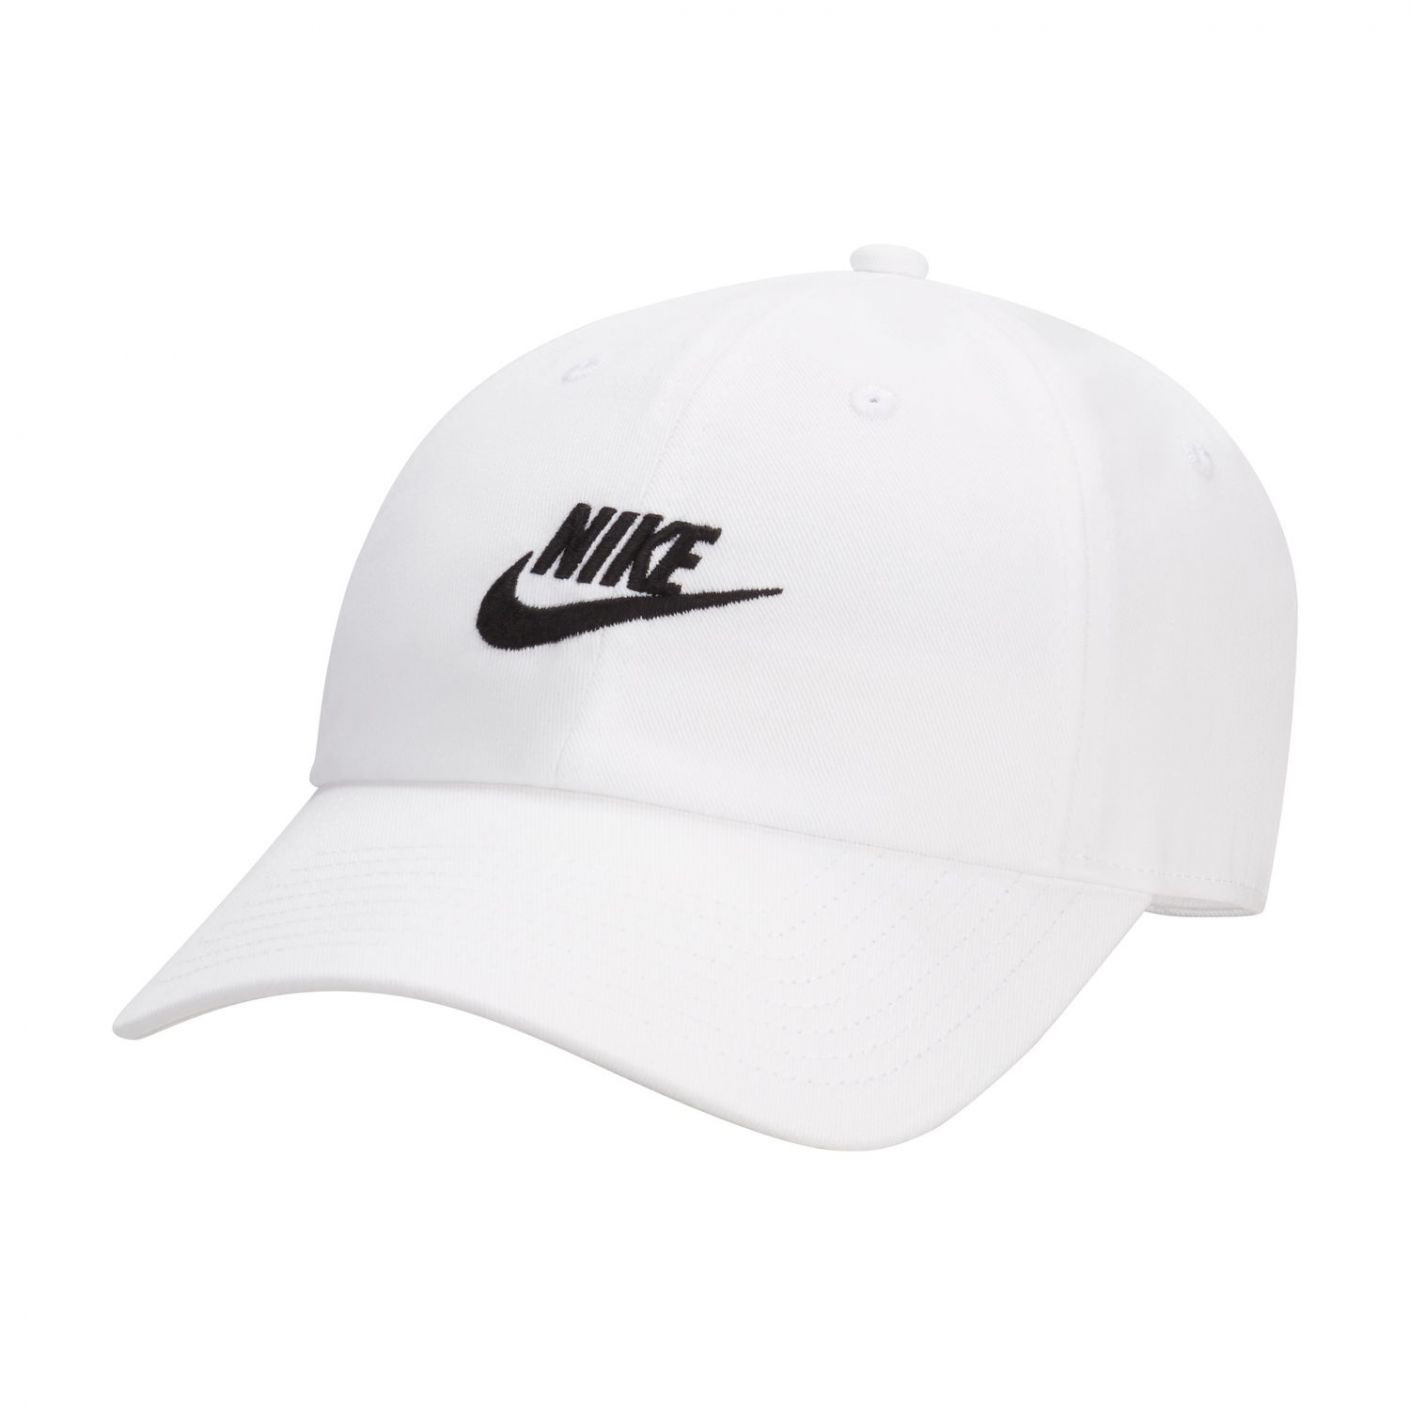 Nike Cappello Unstructured Futura Wash White/Black